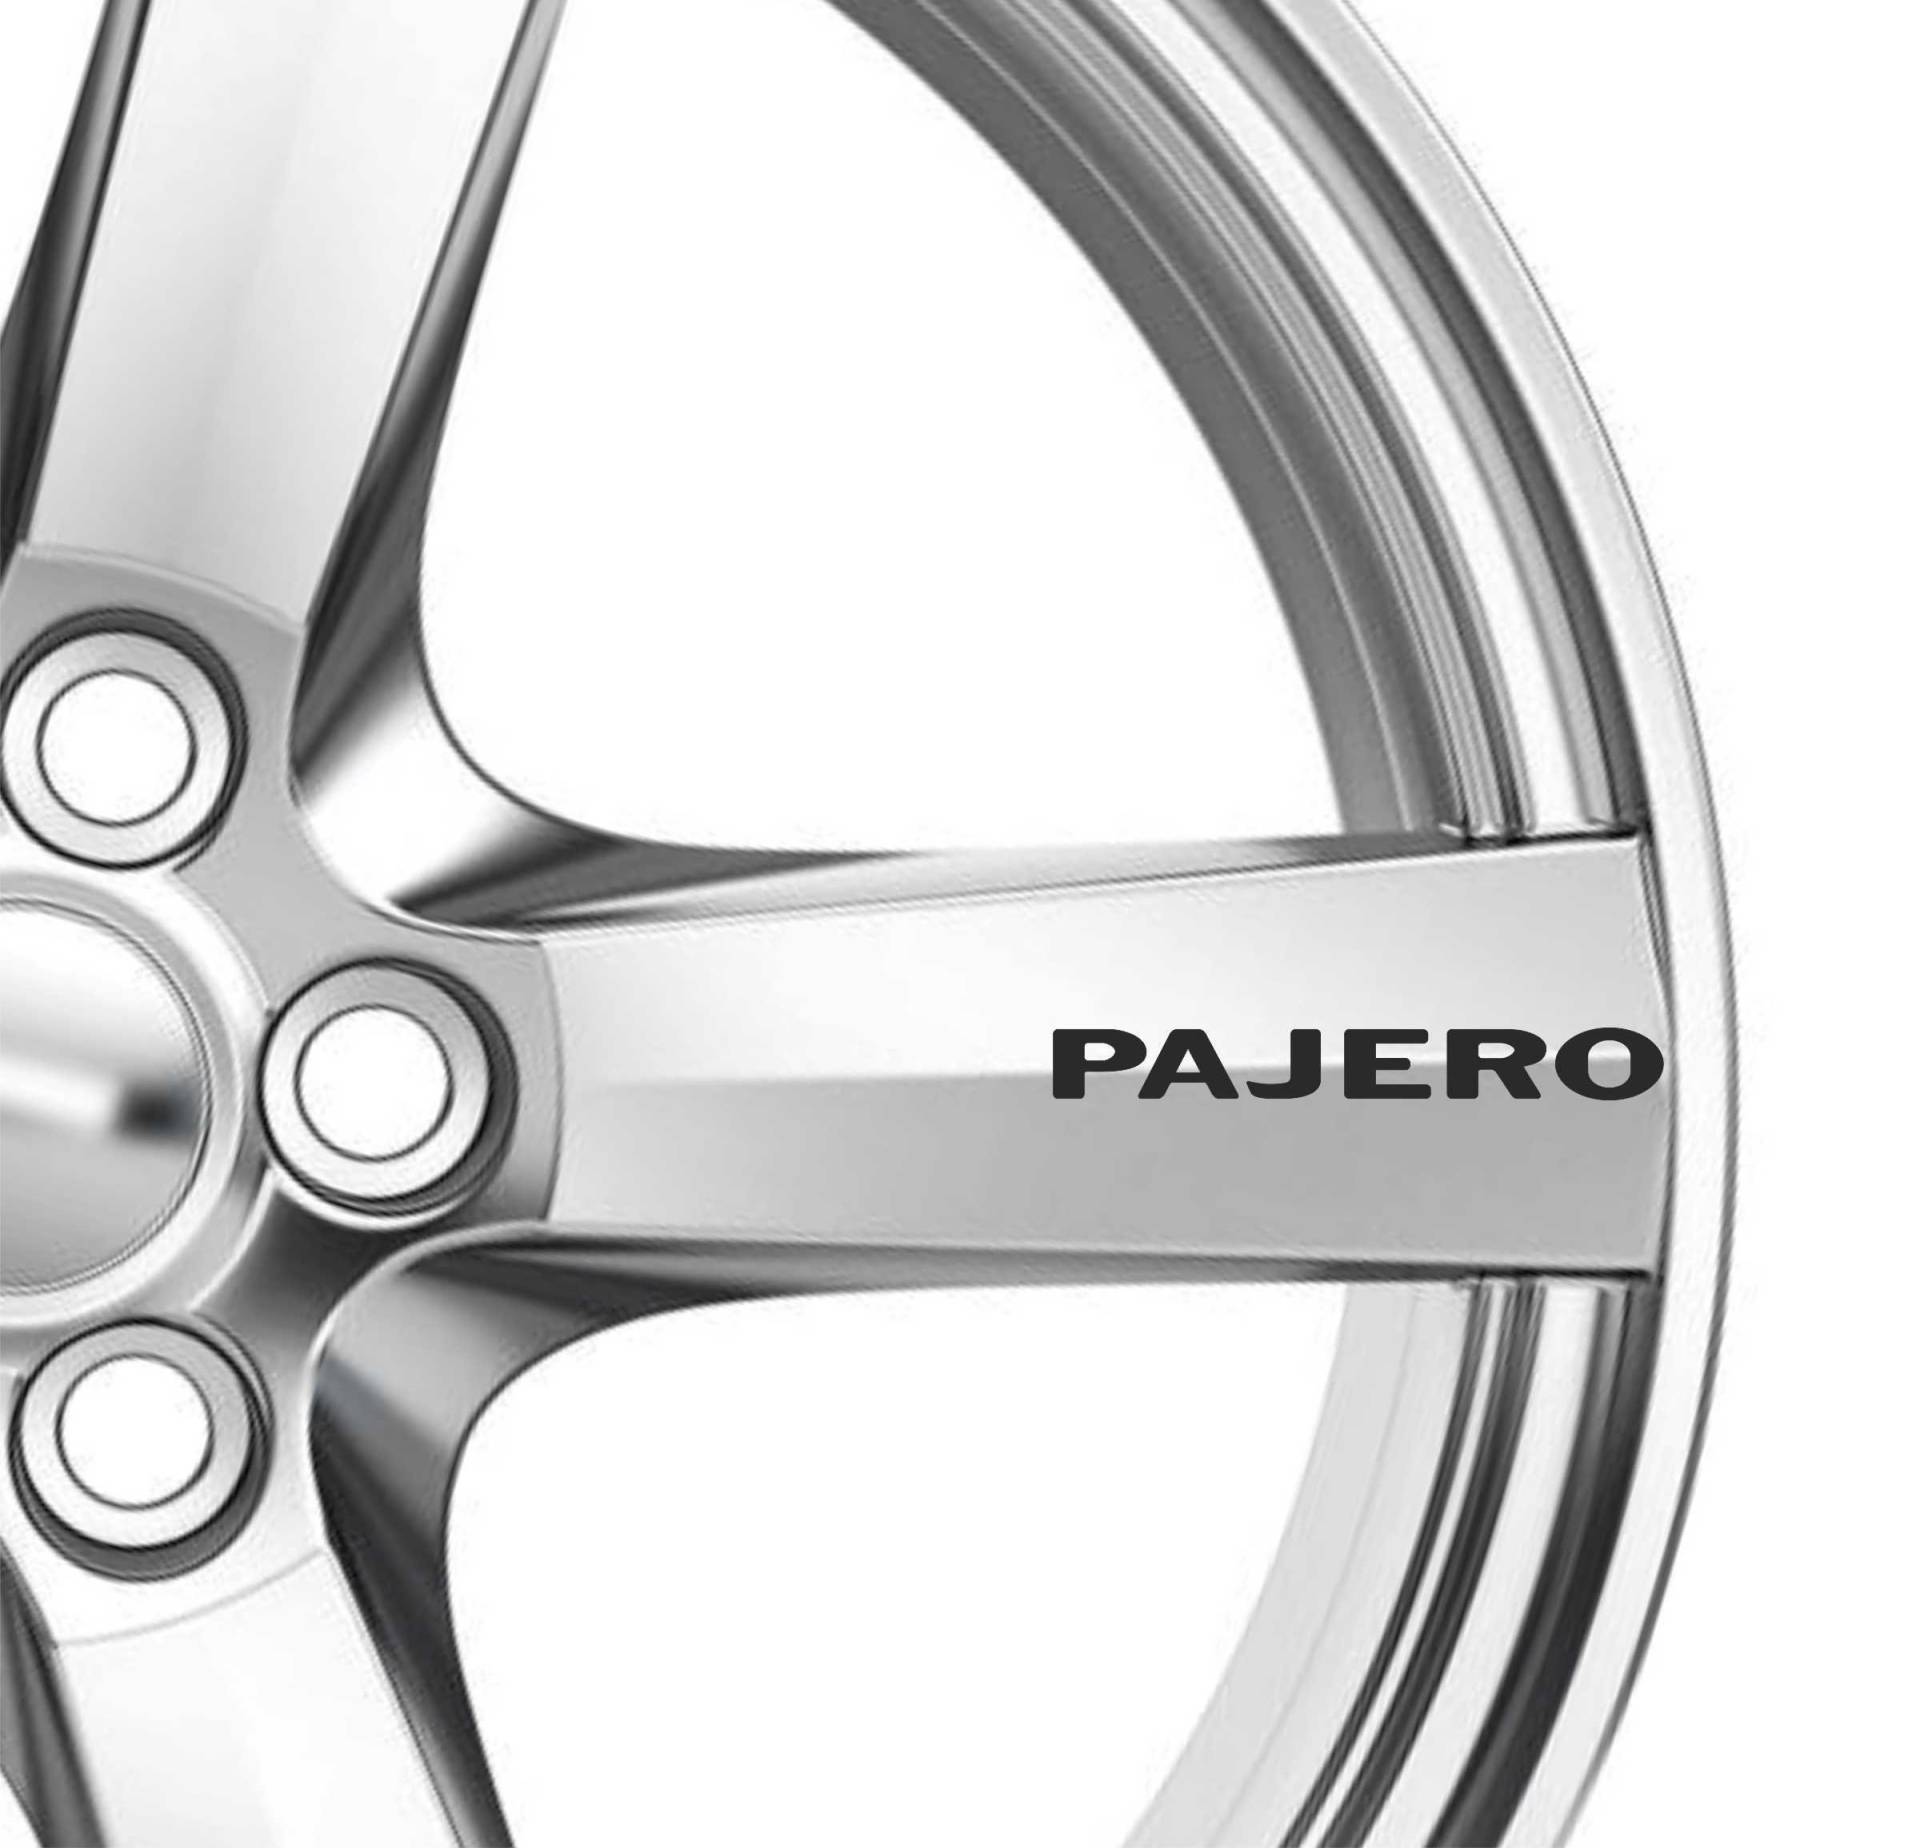 6 x Pajero Alufelgen Aufkleber Aufkleber Kleber Premium Qualität 4 Sports Auto von st1ck-it